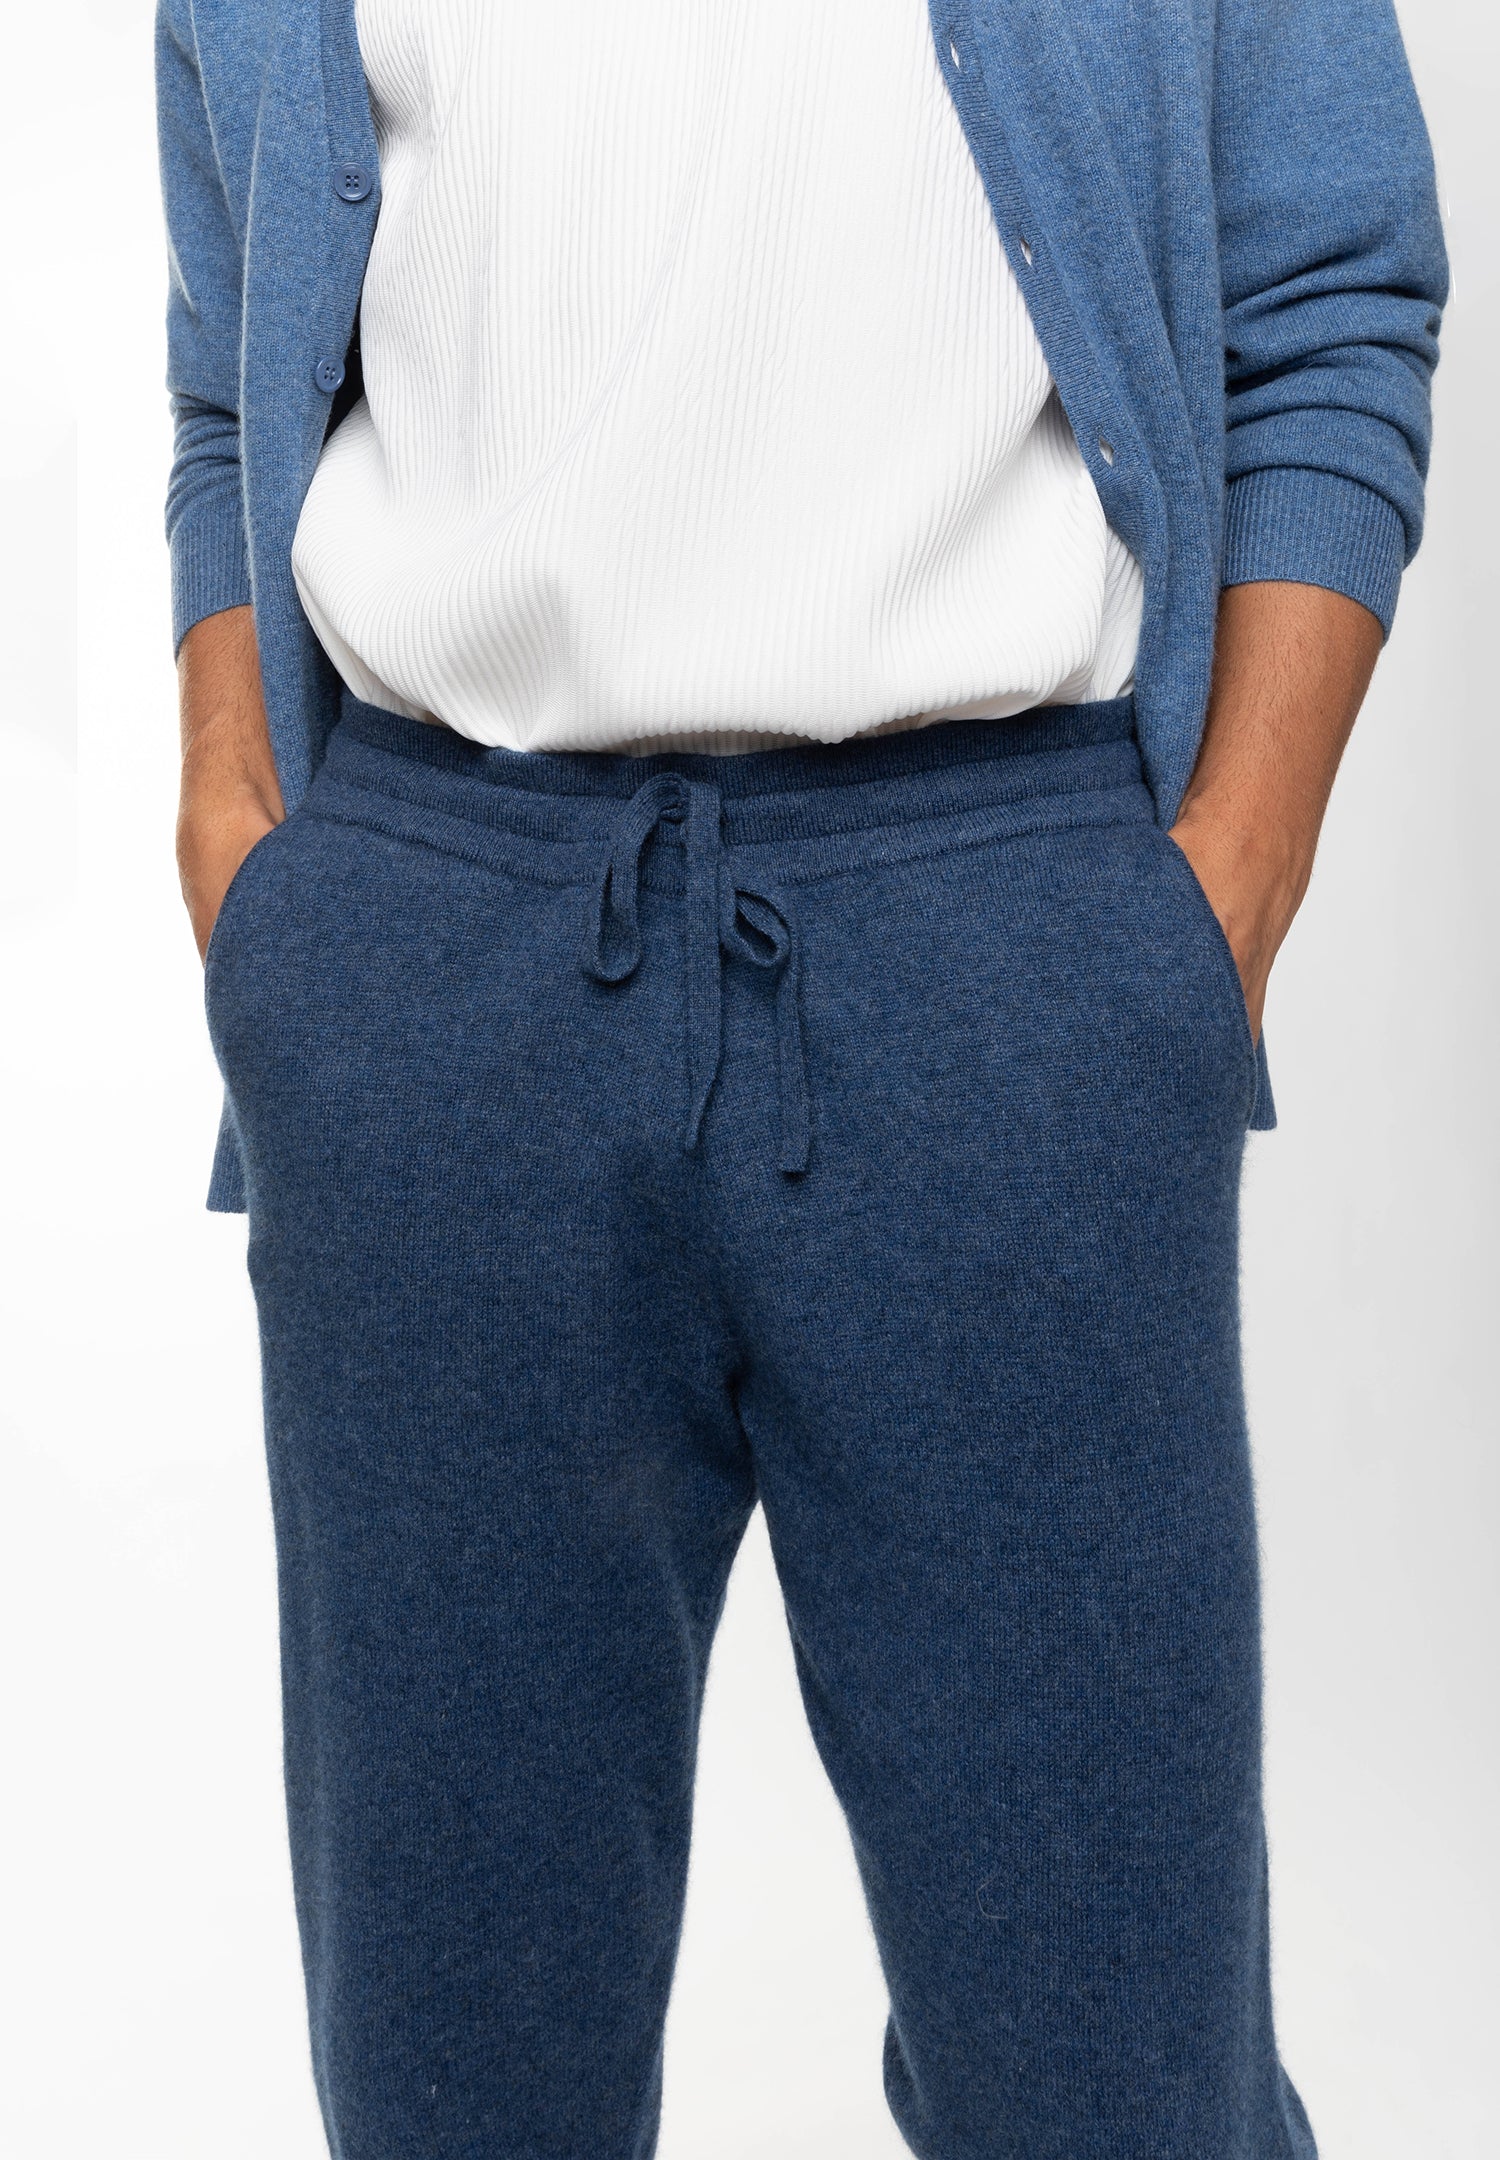 BICHET pantalon de jogging bleu foncé en cachemire